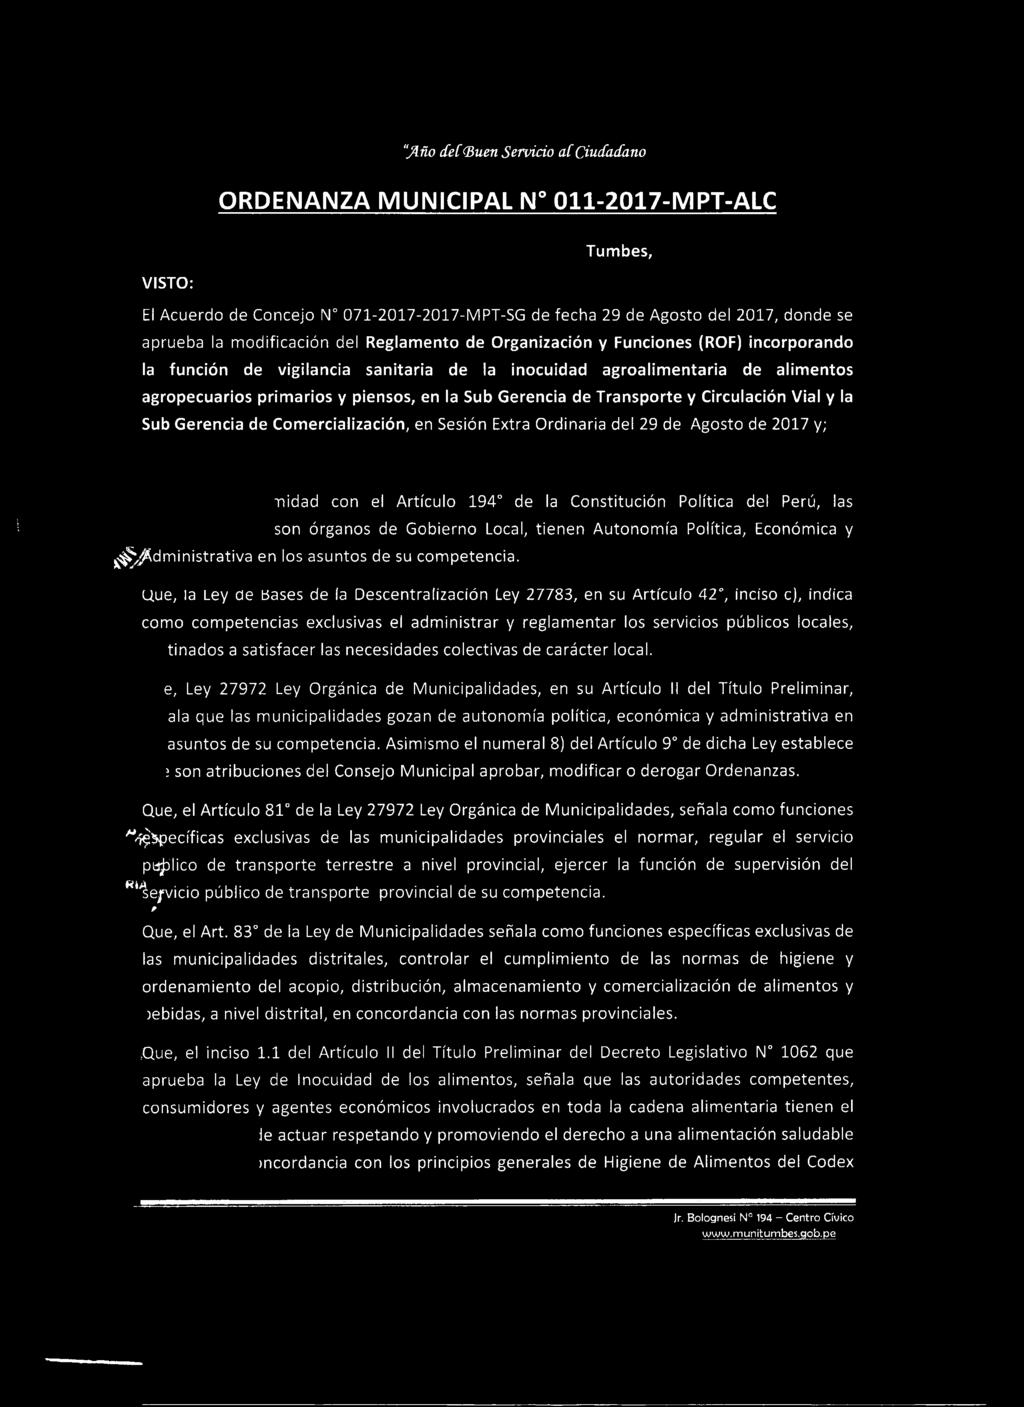 el Artículo 194 de la Constitución Política del Perú, las son órganos de Gobierno Local, tienen Autonomía Política, Económica y ^